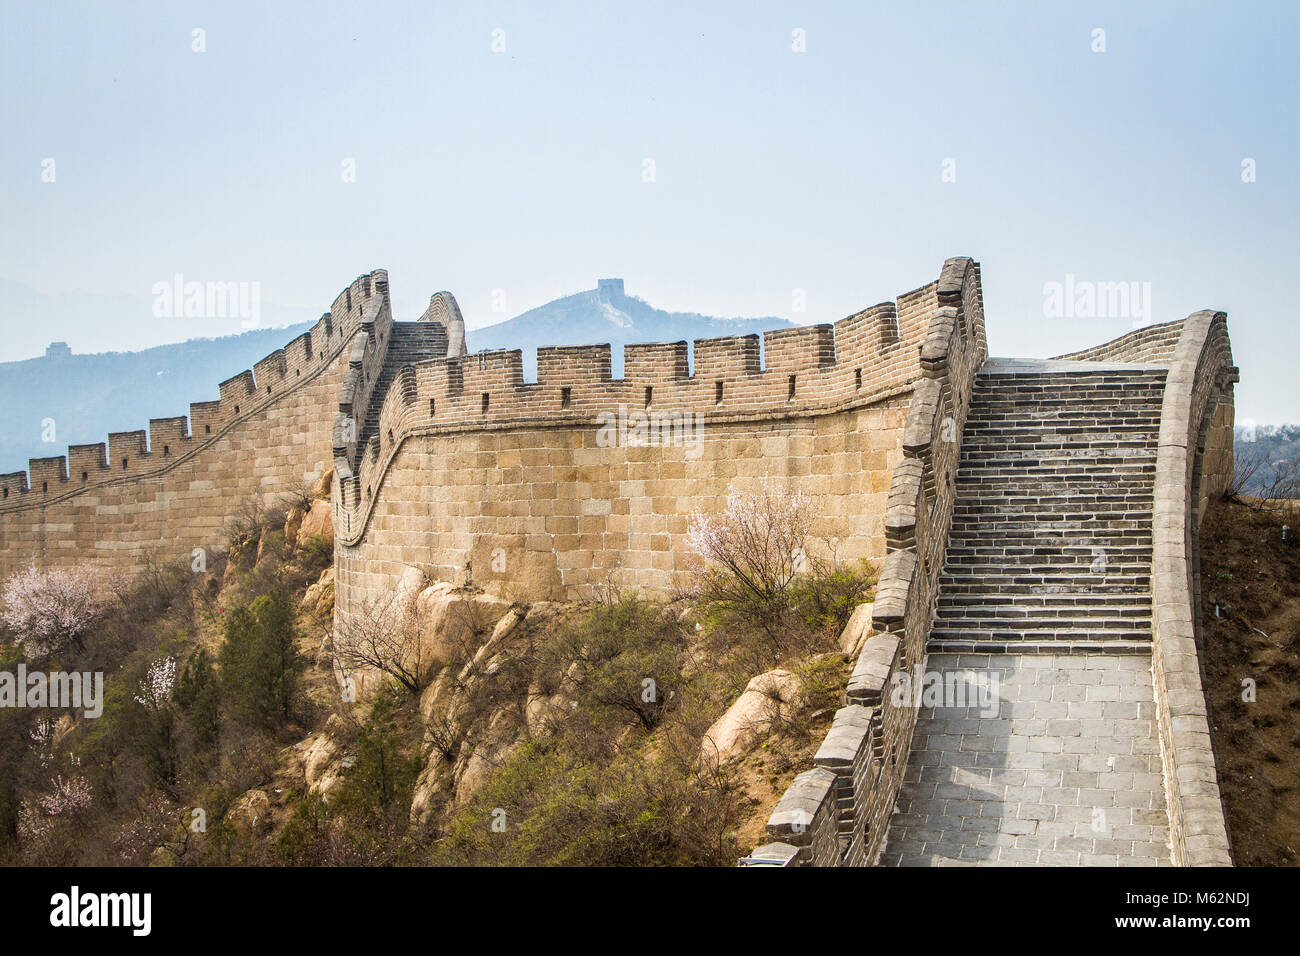 Die große Mauer von China, die Badaling Abschnitt Stockfoto